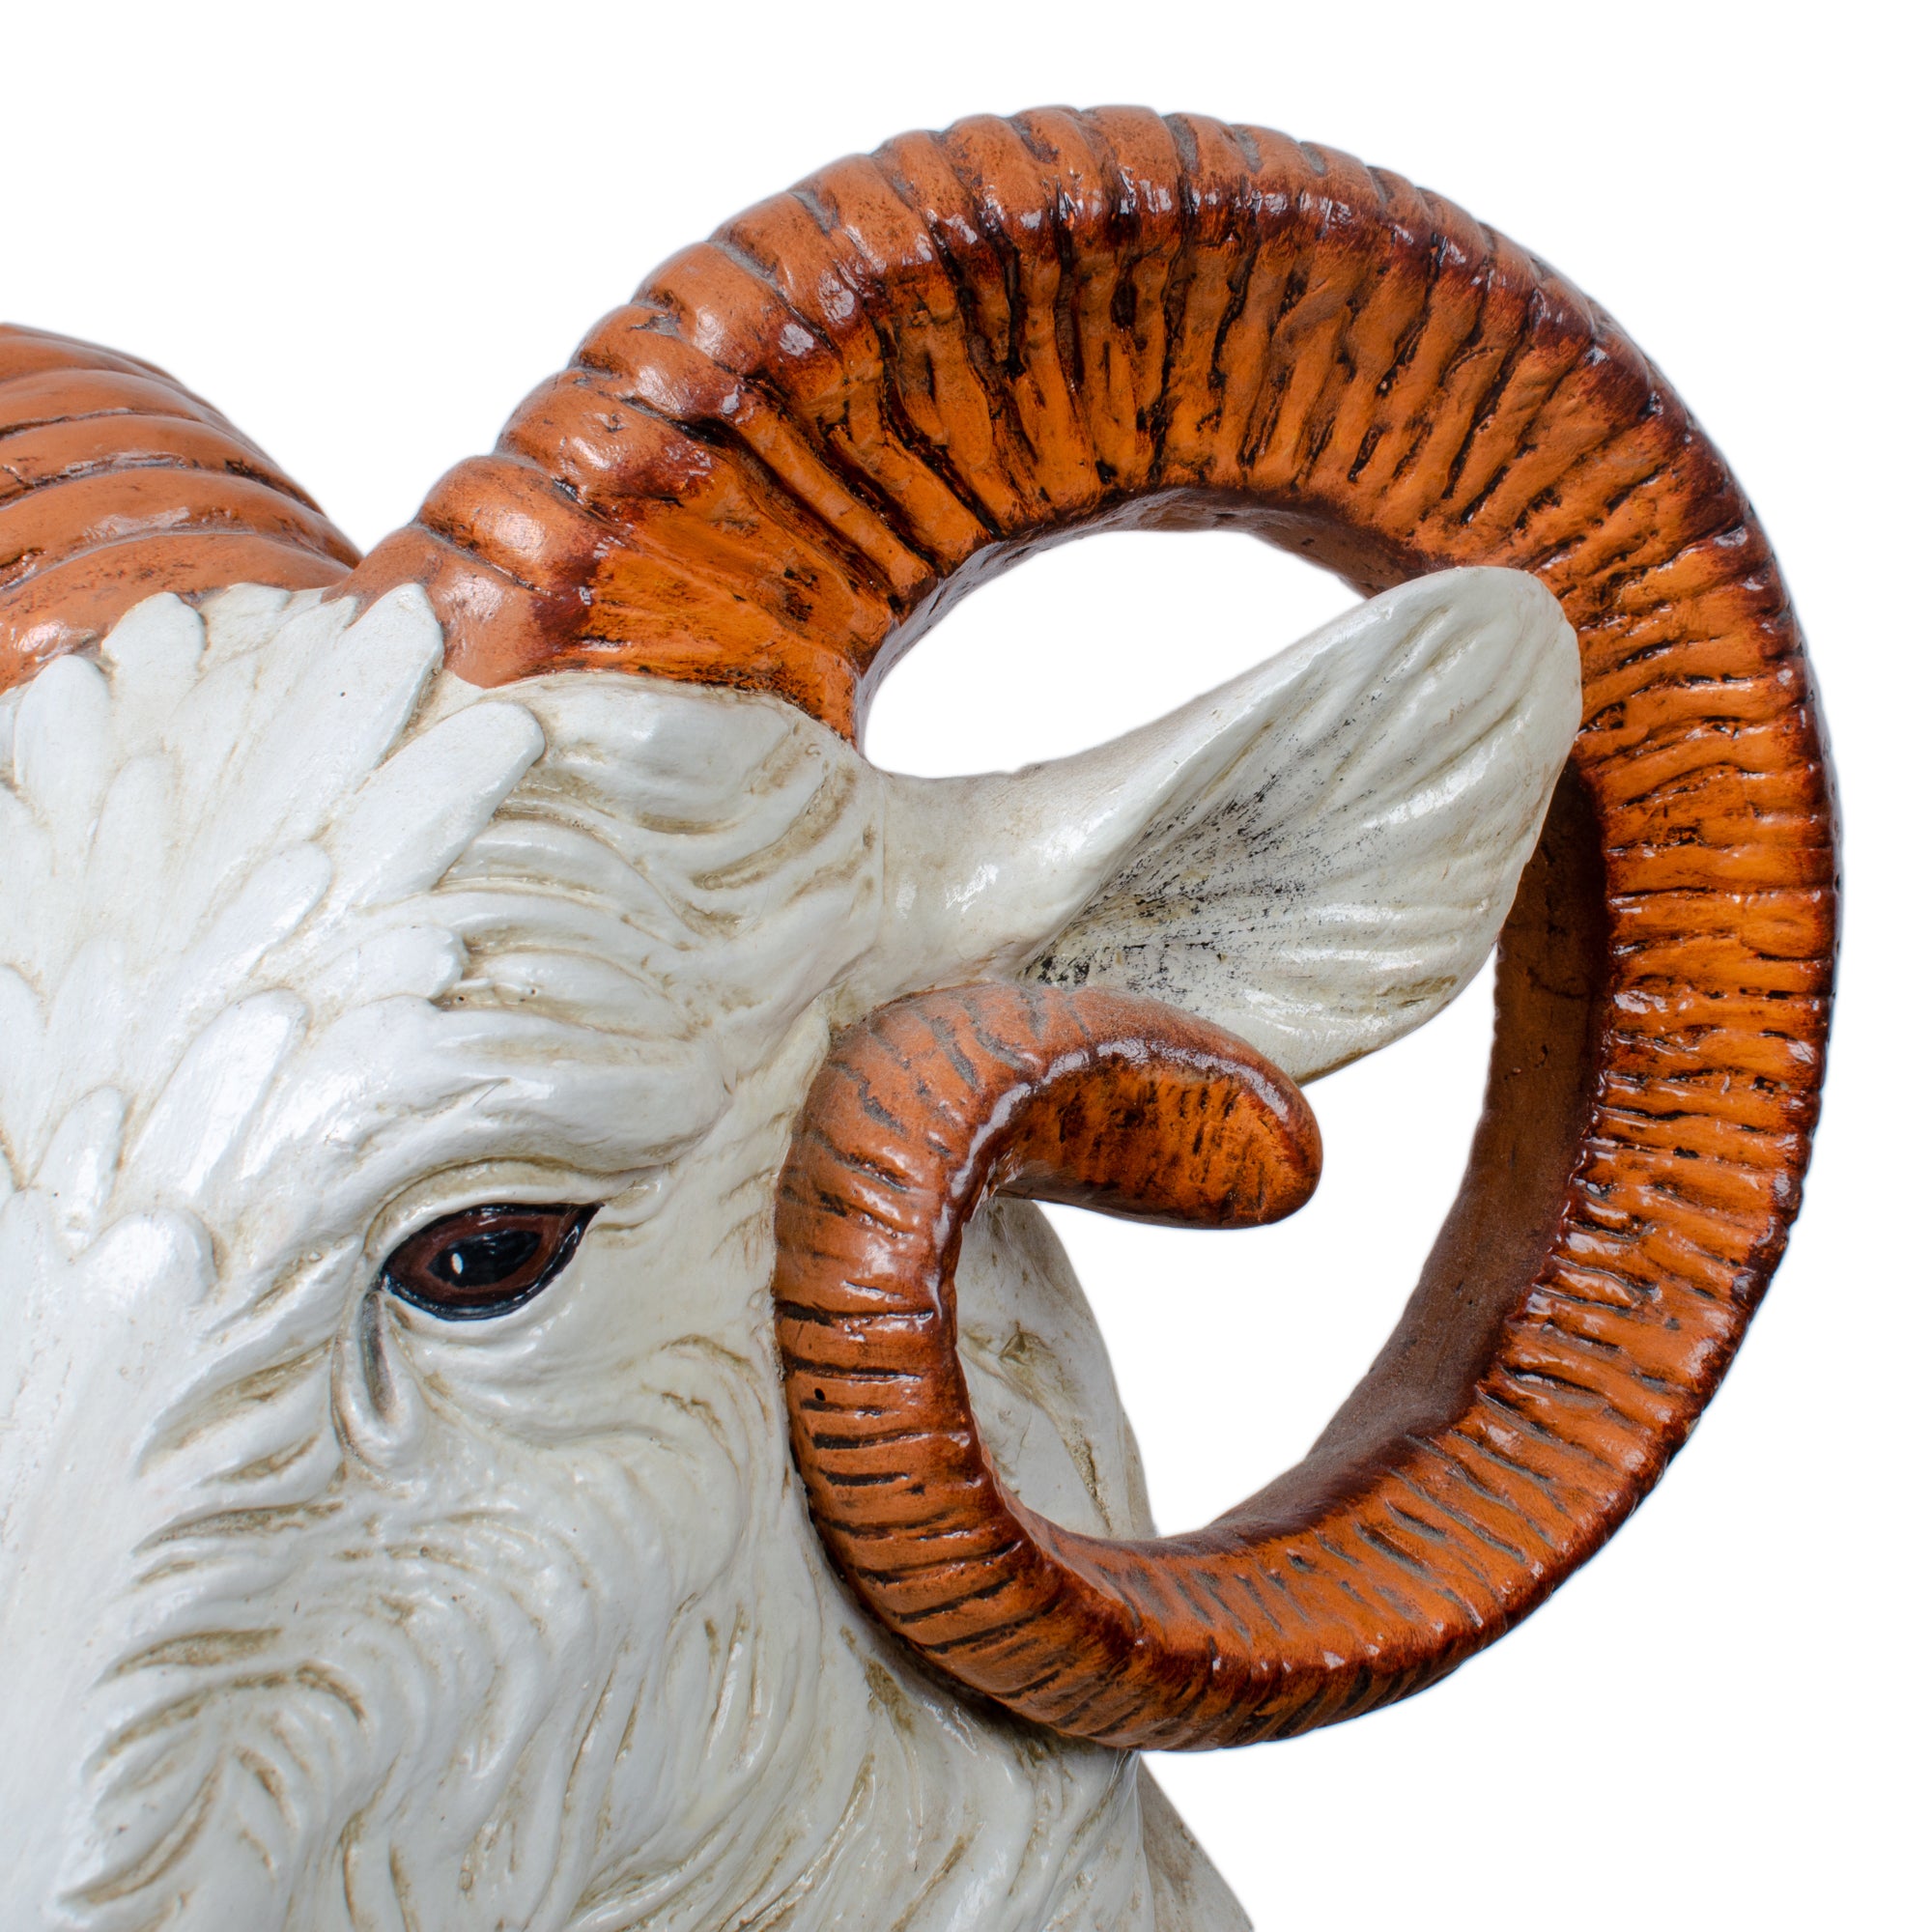 Italian Ceramic Ram